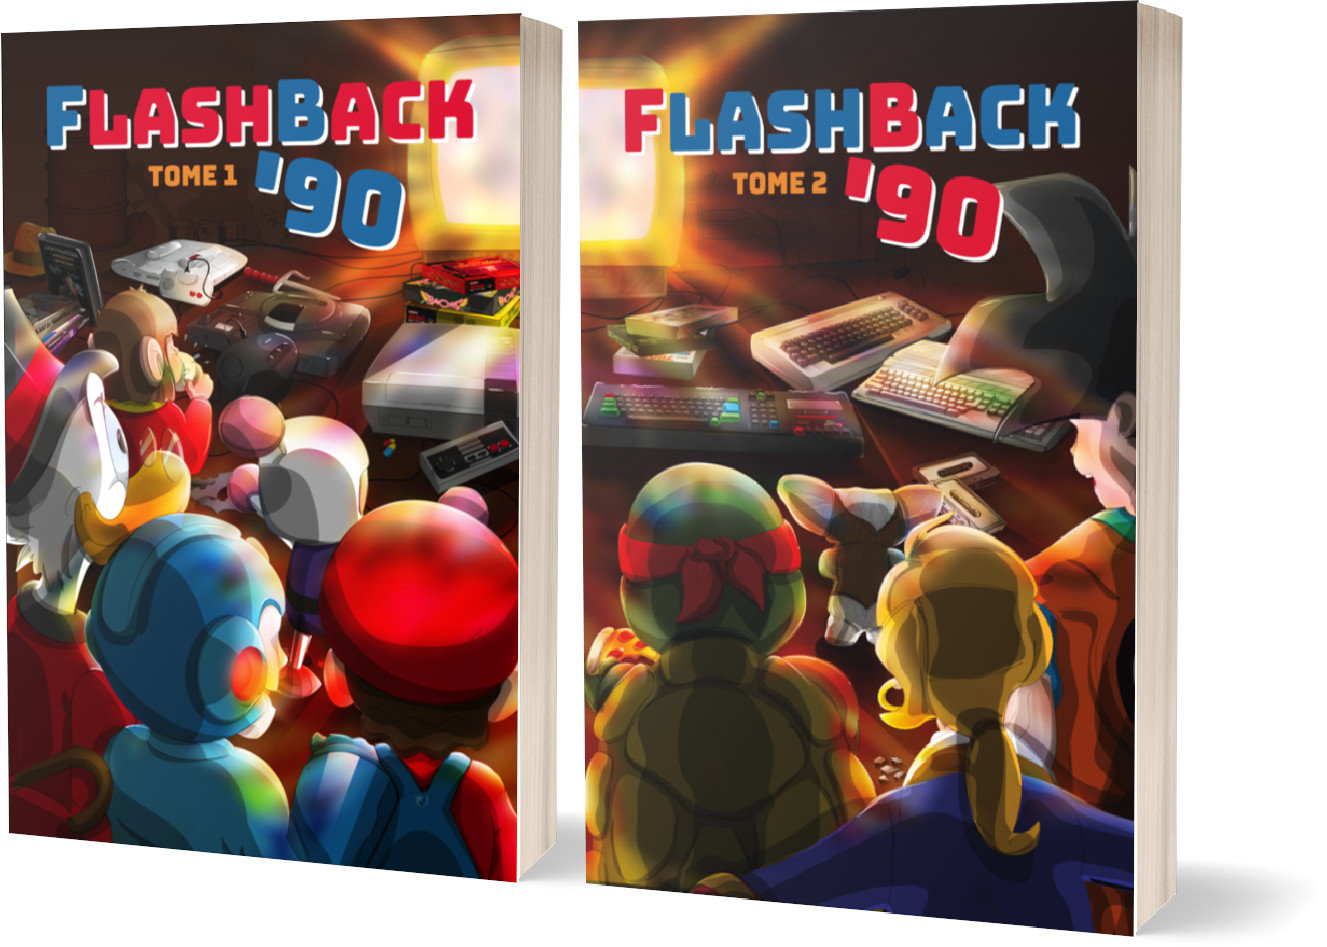 Flashback 90 les jeux vidéo en 1990 couvertures des tomes 1 et 2